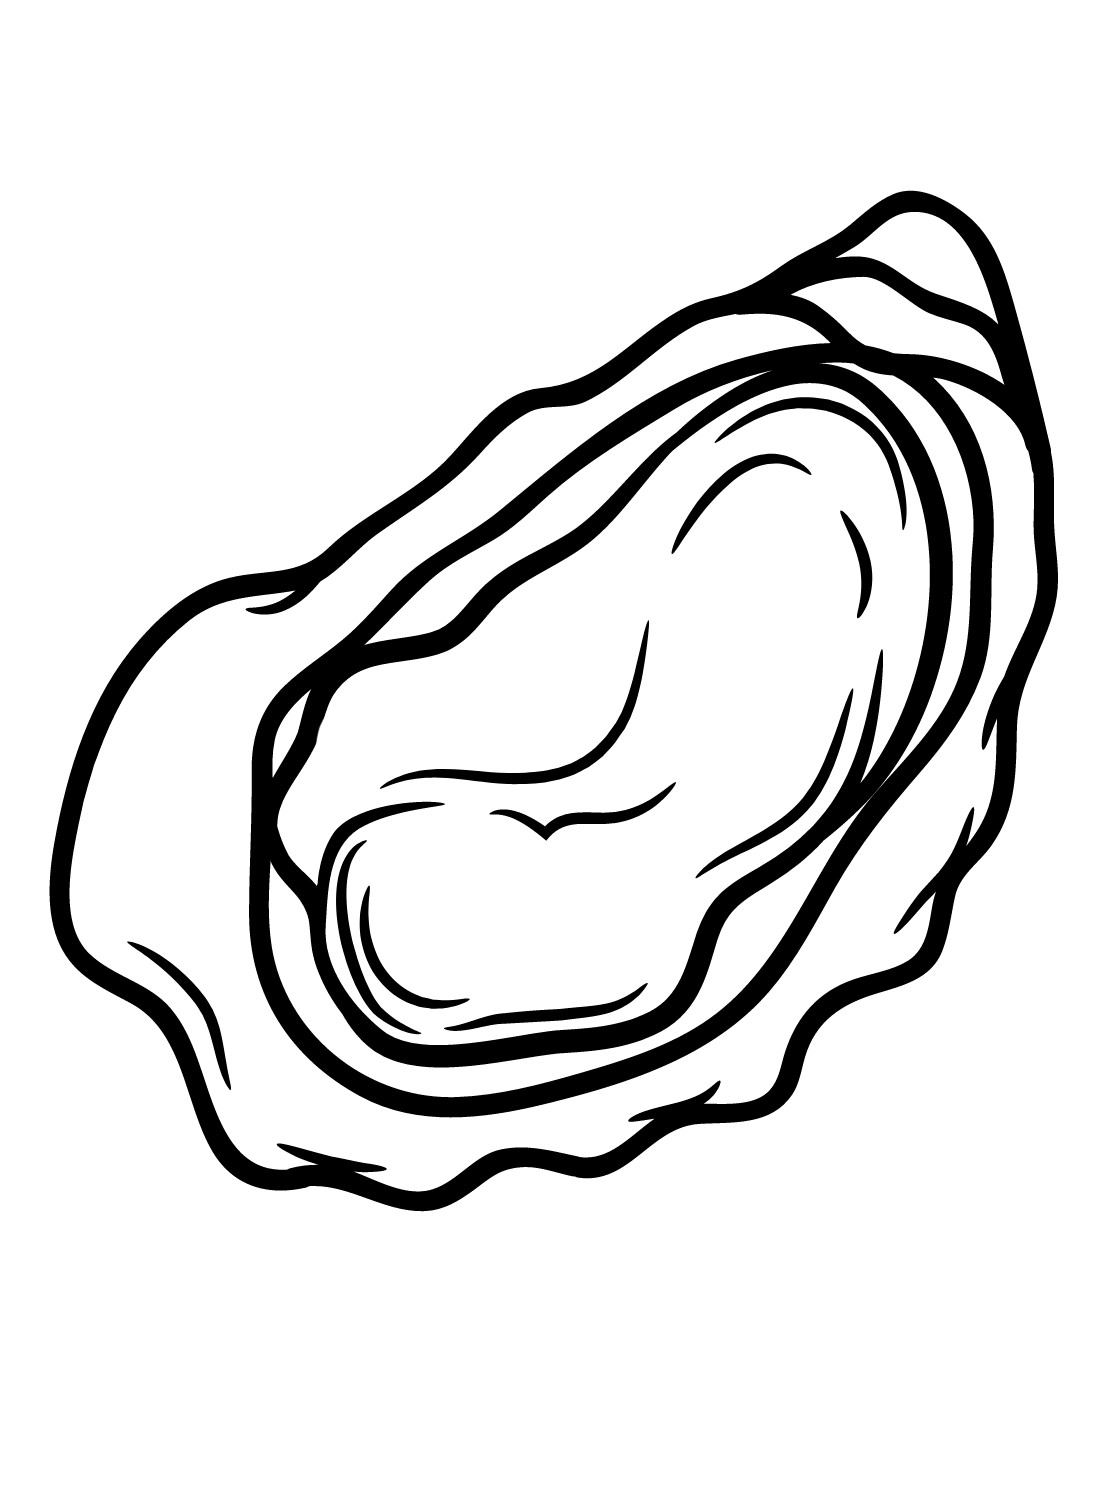 Imagens de ostras de Oyster